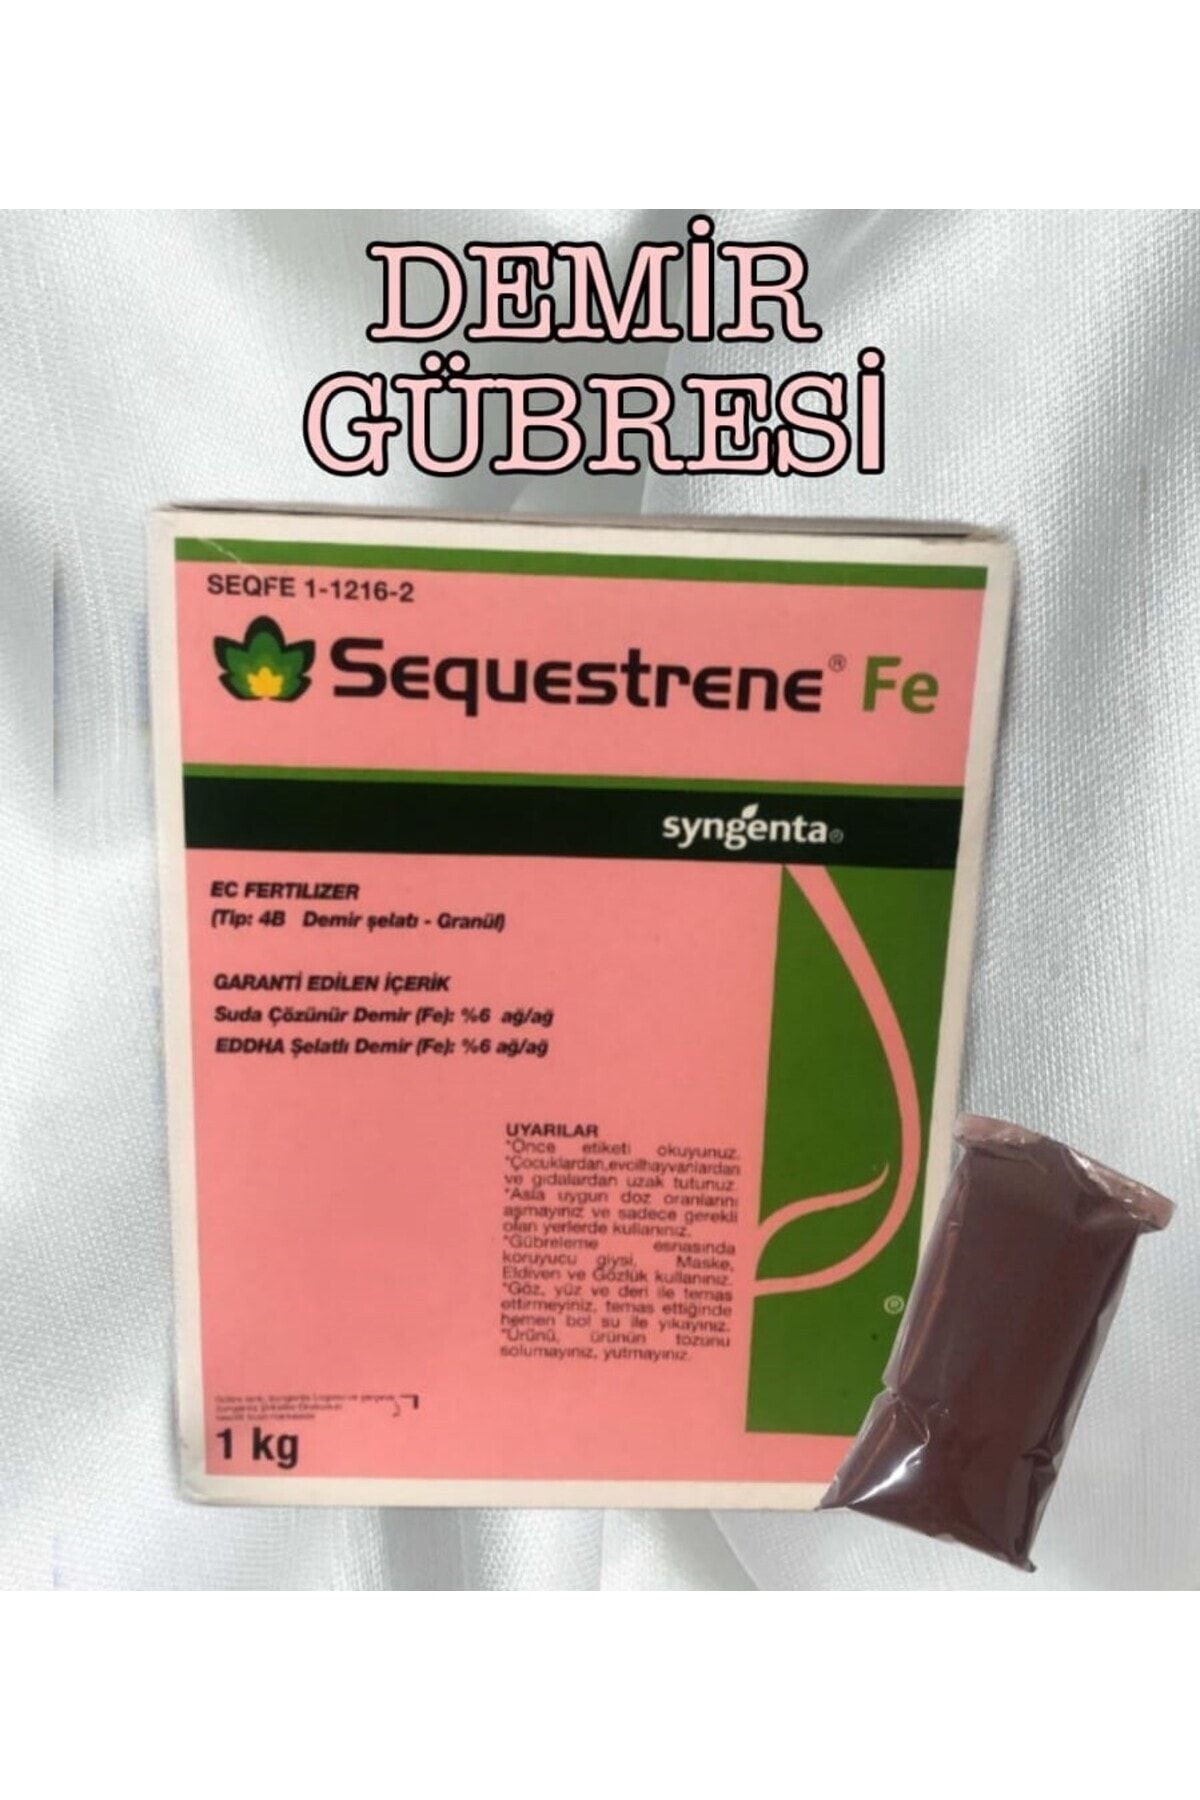 syngenta Sequestrene Fe Demir Gübresi - 0,1 kg